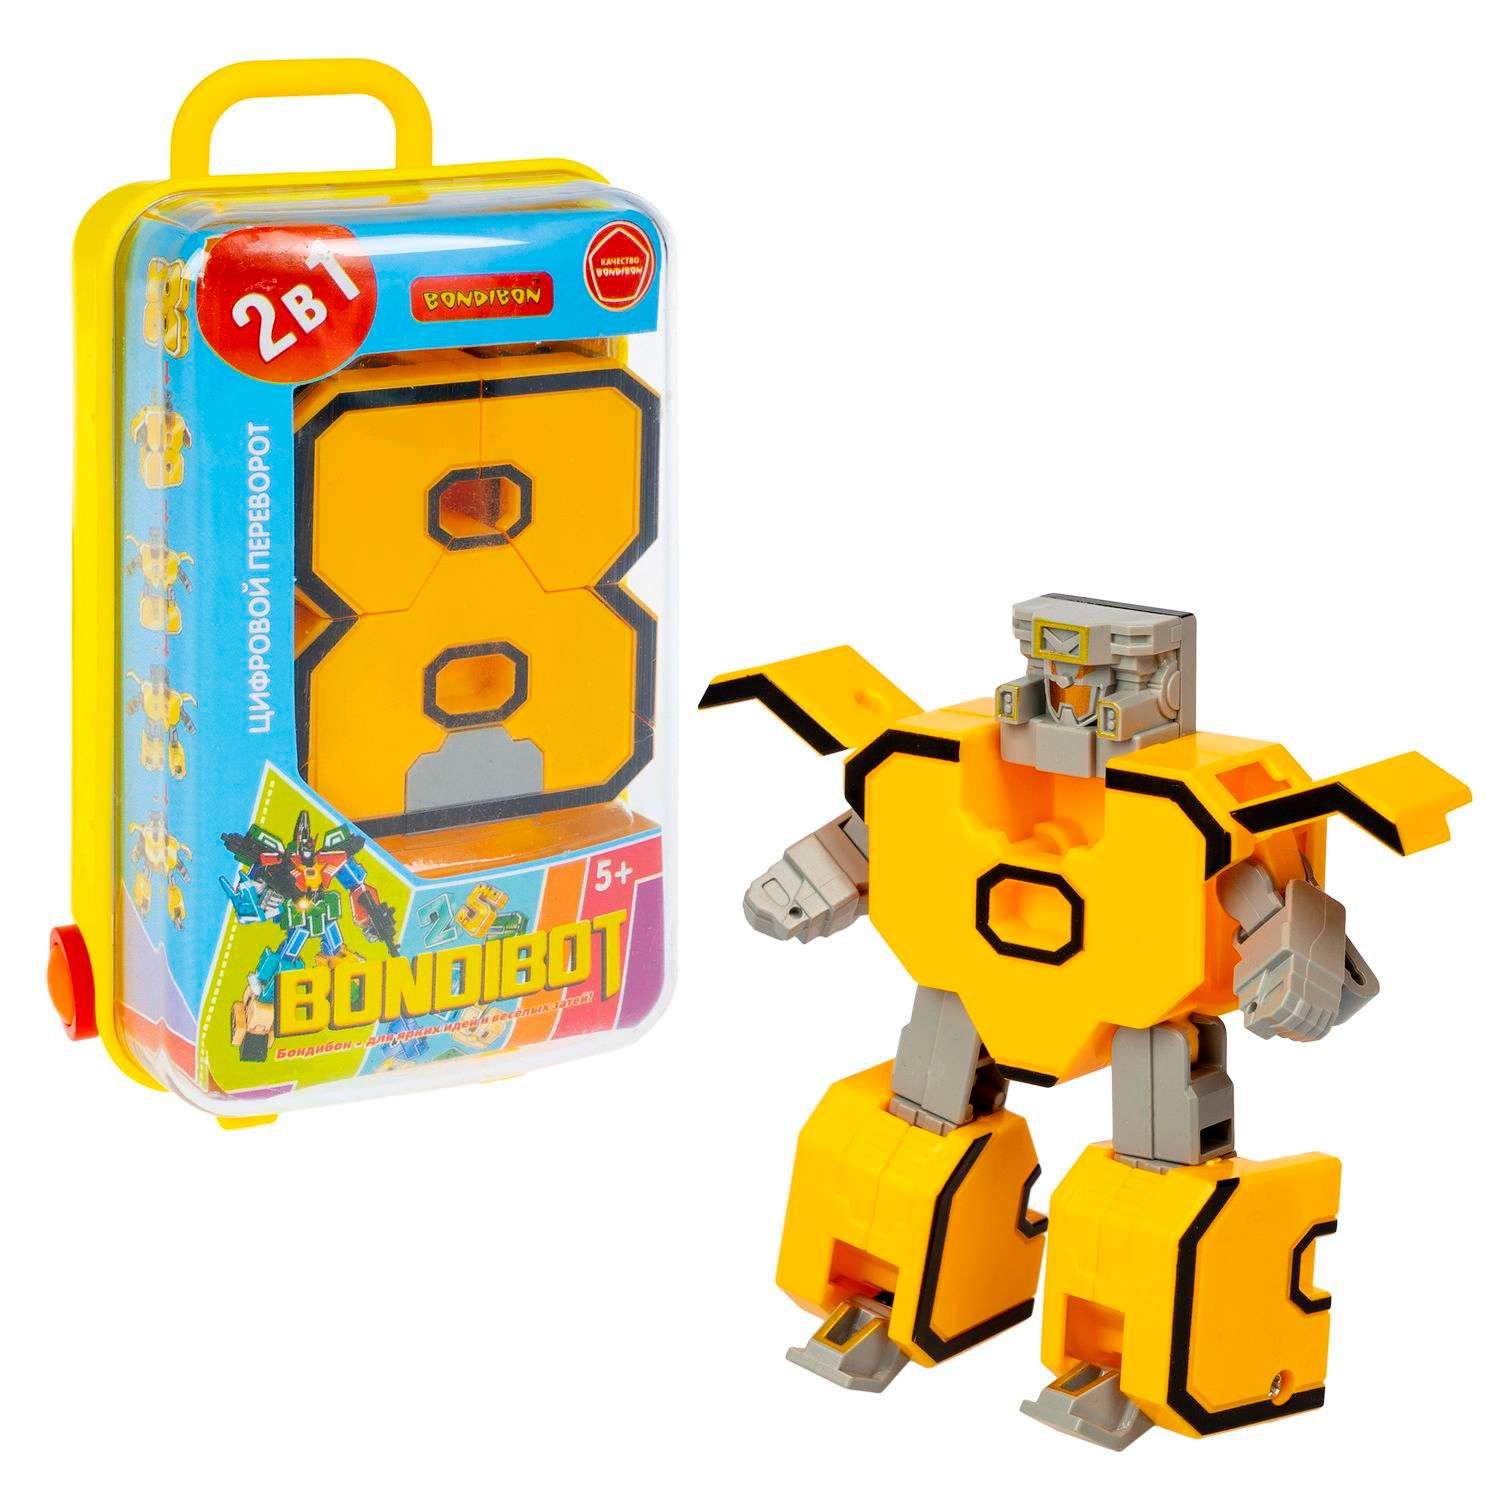 Трансформер BONDIBON BONDIBOT 2 в 1 Цифровой переворот робот-цифра 8 жёлтого цвета в желтом боксе - фото 2